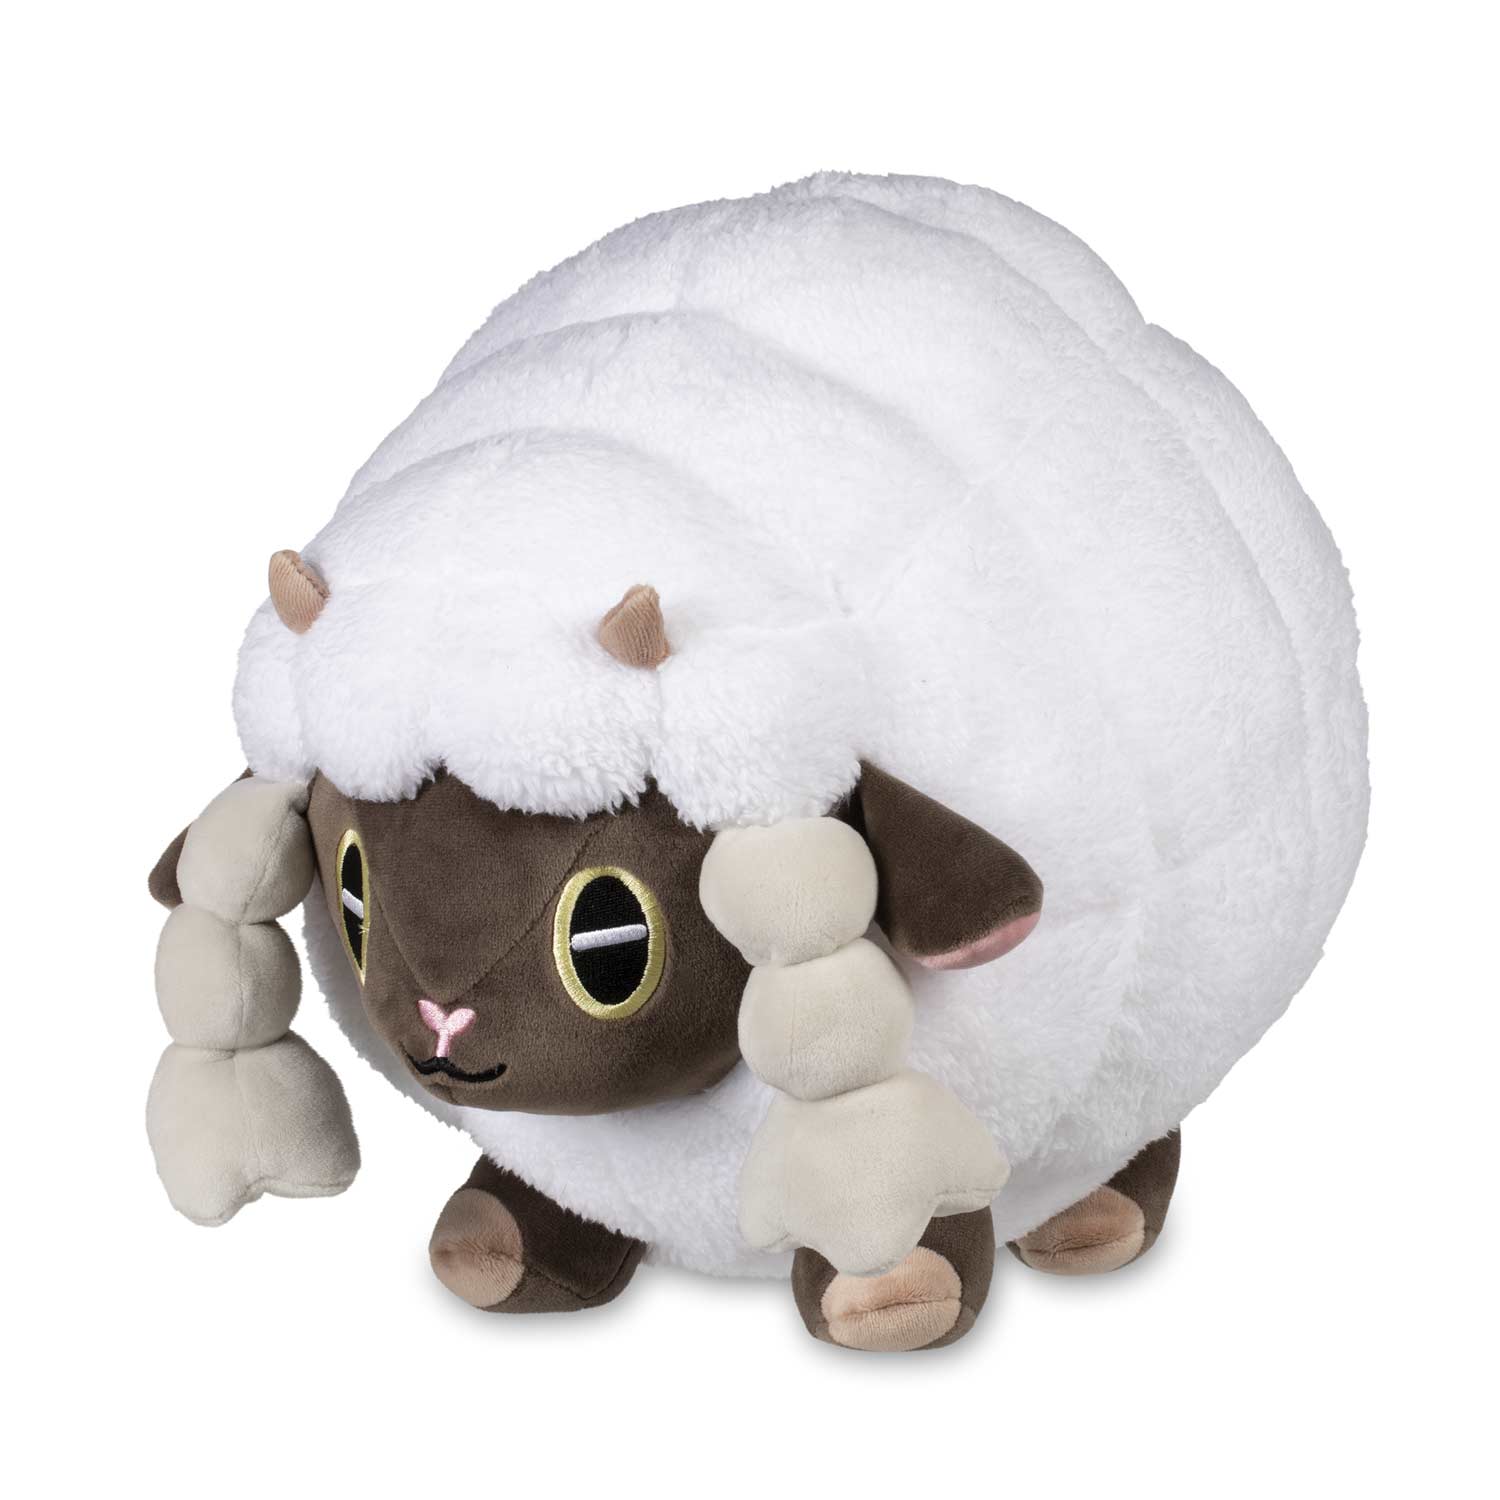 wooloo stuffed animal